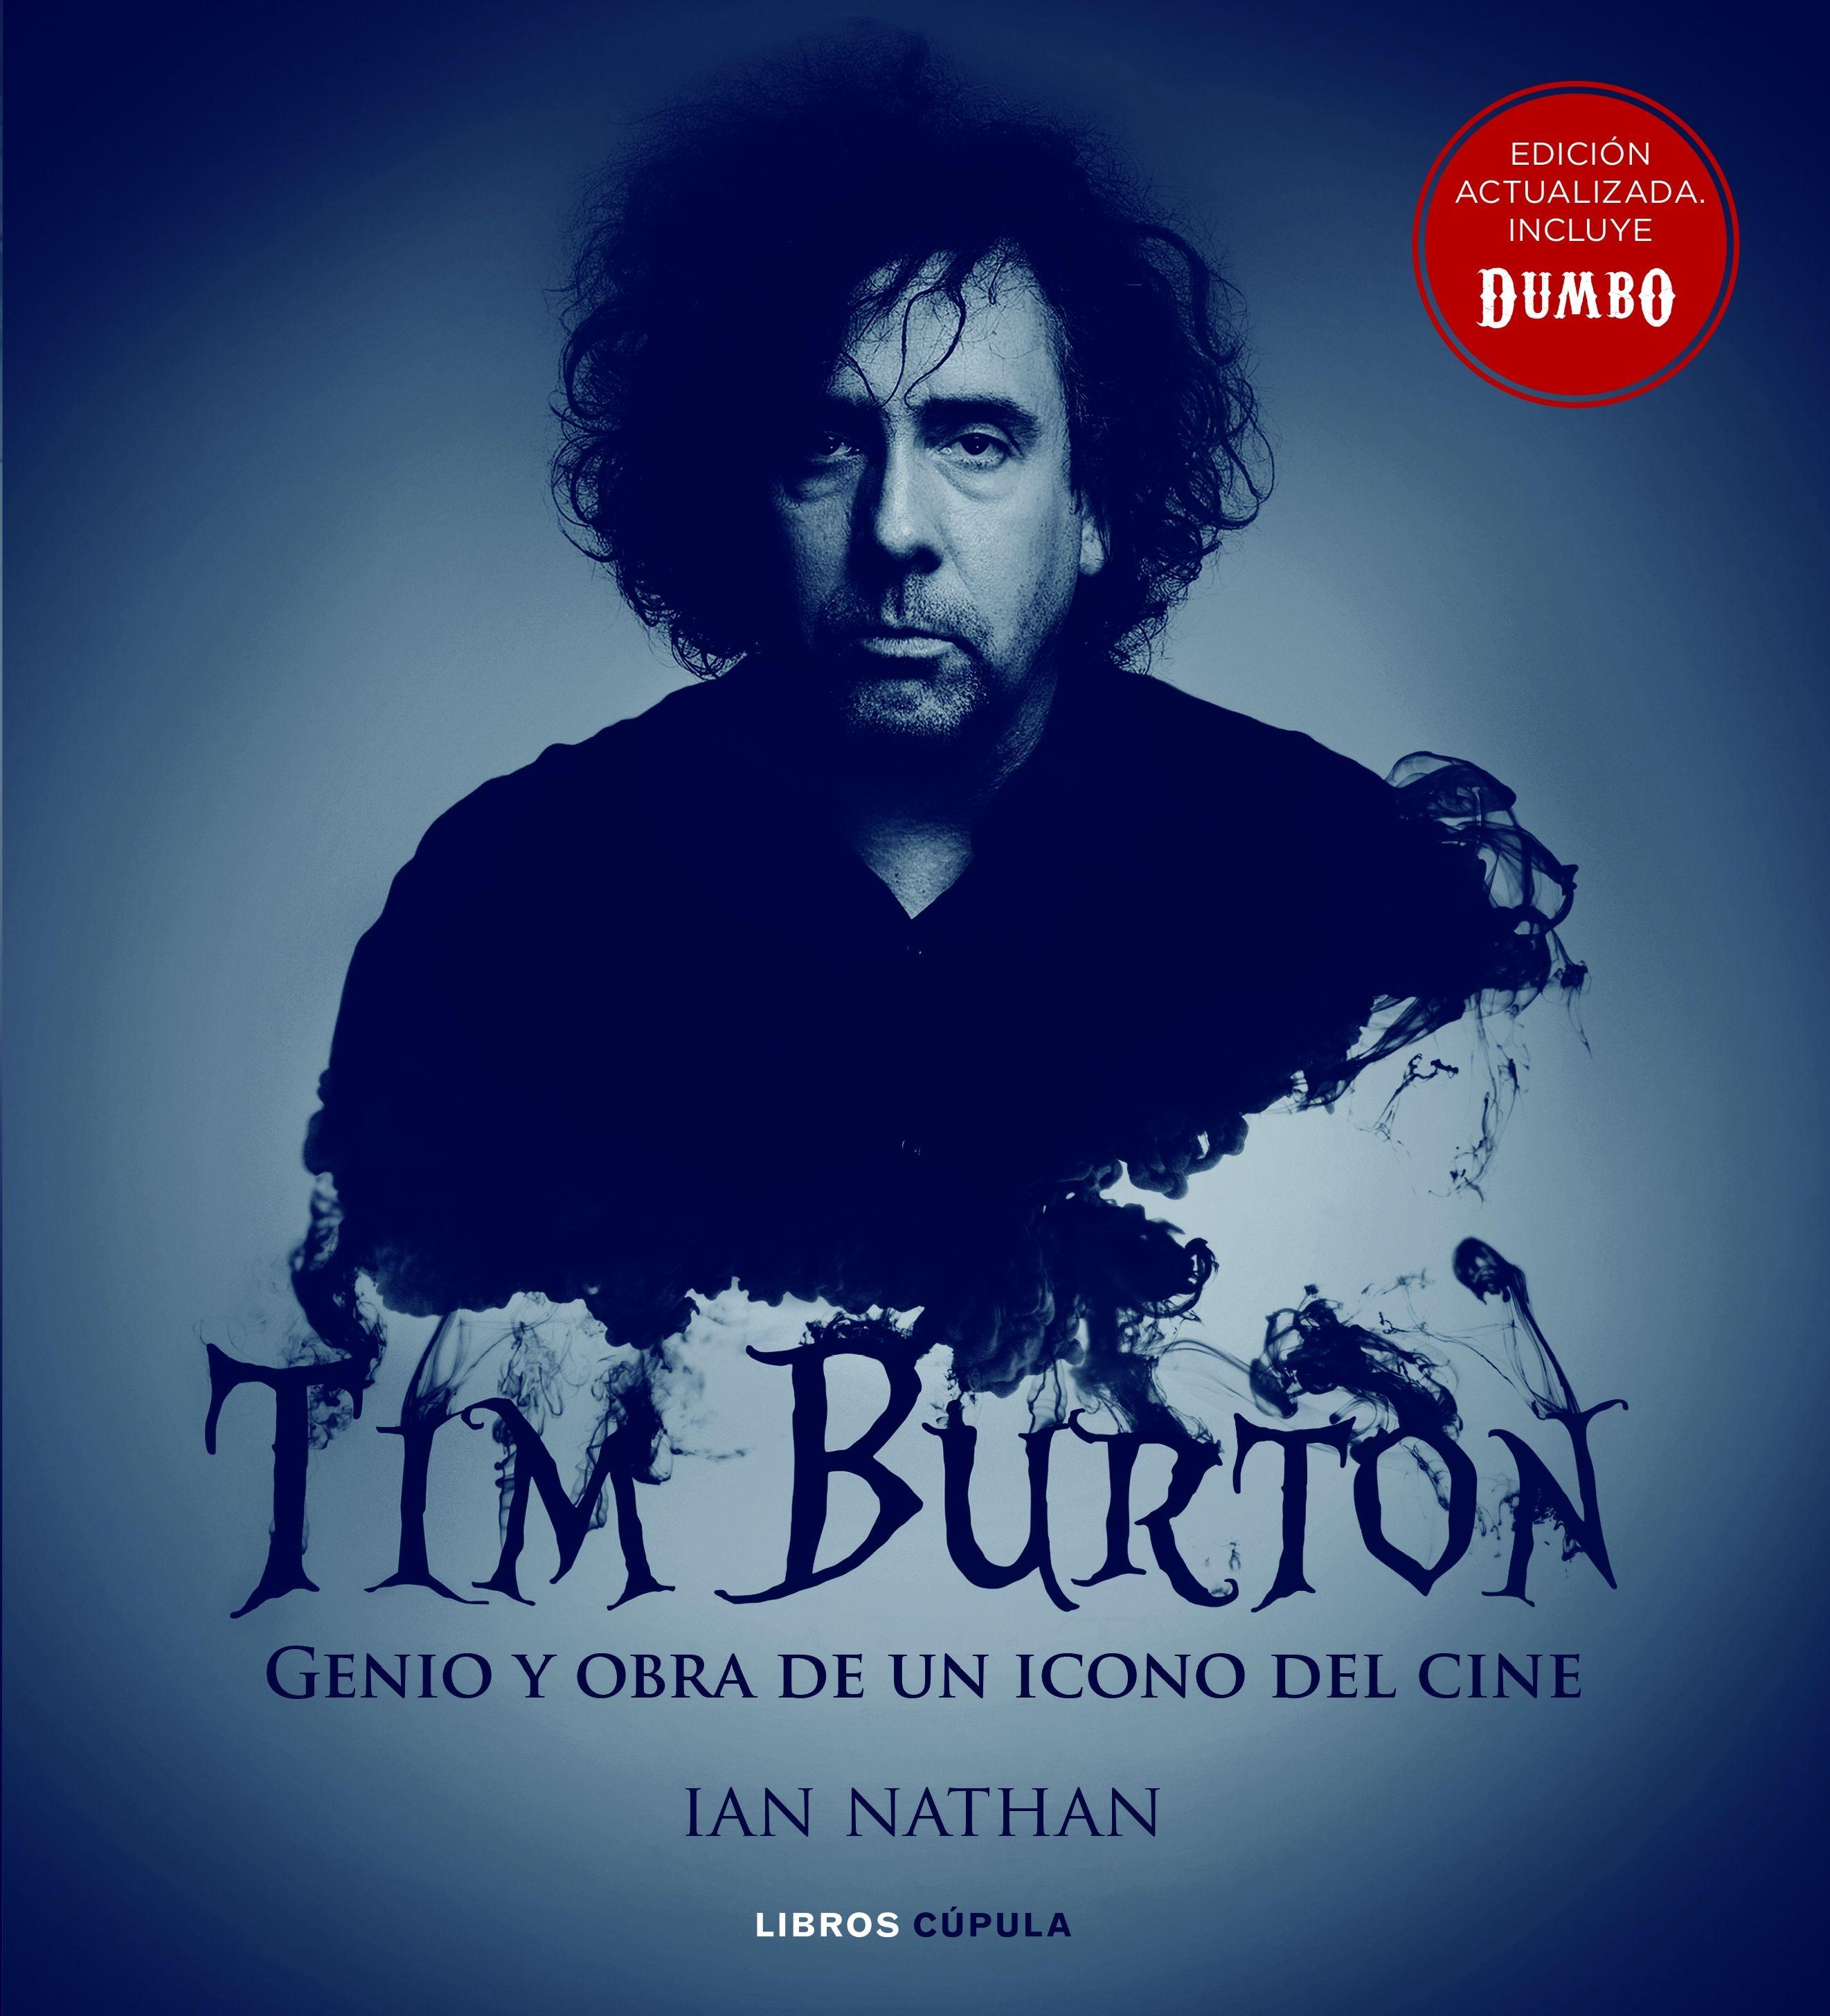 Tim Burton (Nueva Edición) "Genio y Obra de un Icono del Cine"